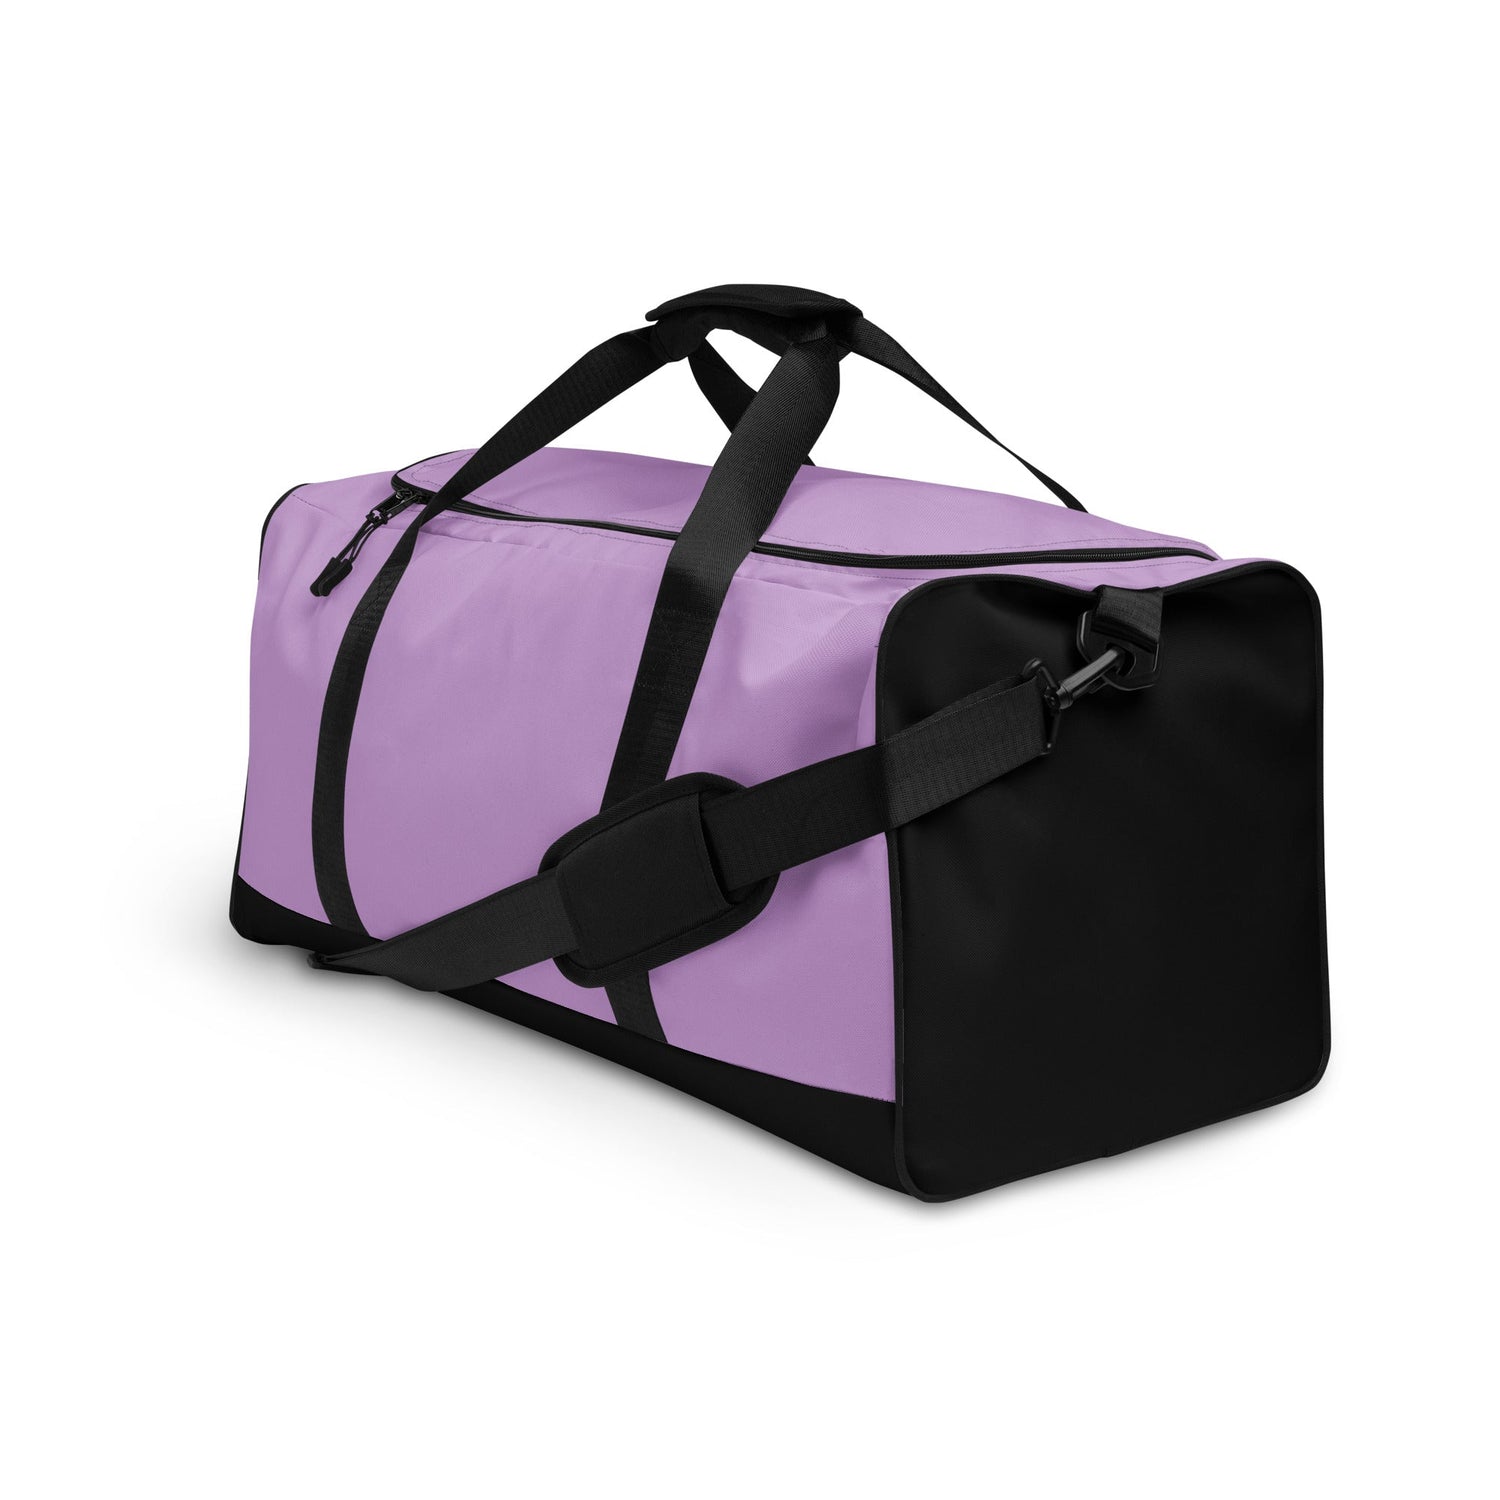 klasneakers KLA duffle bag - Pinky Purple